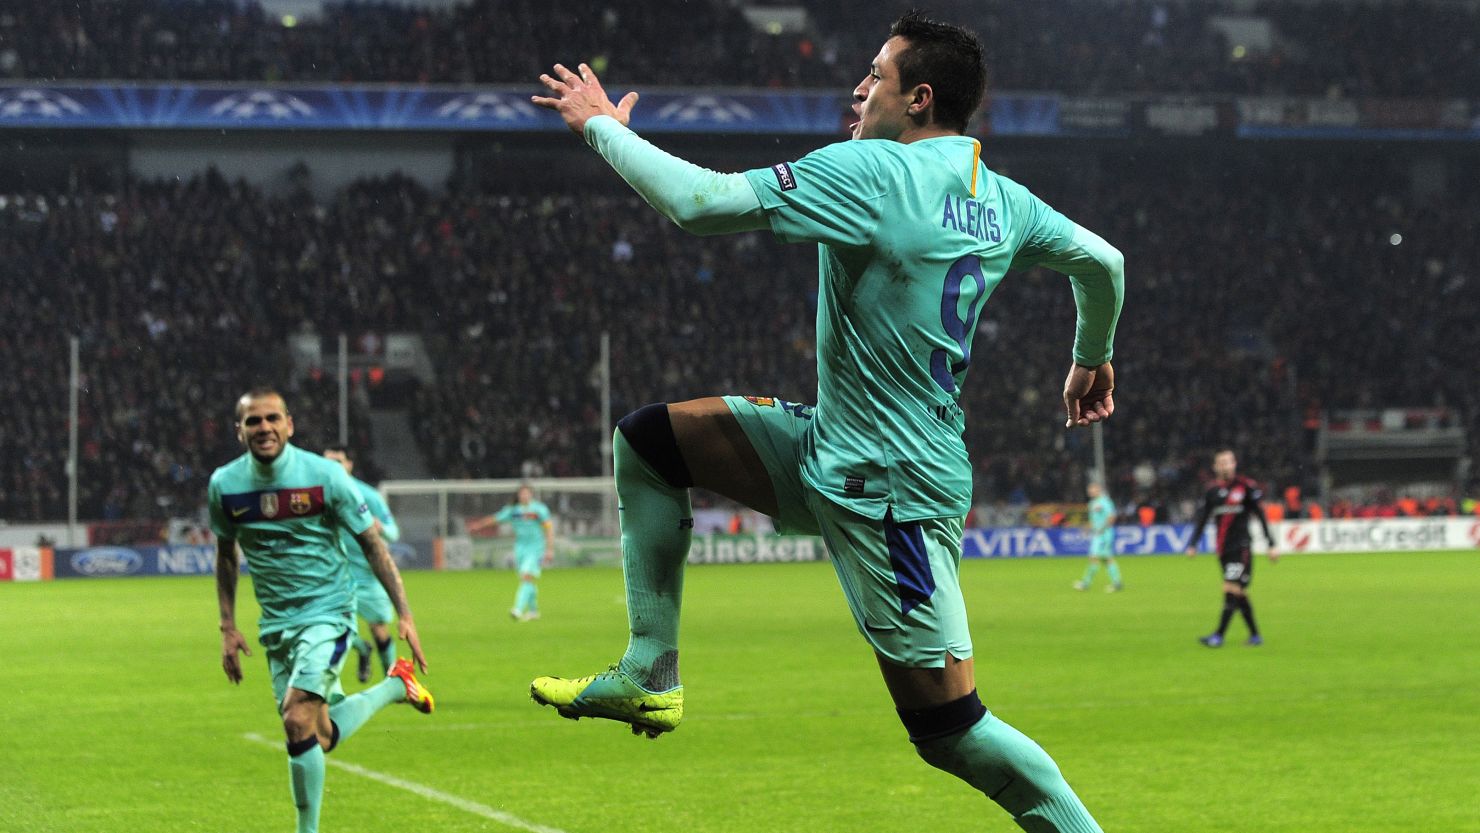 Barcelona's Alexis Sanchez celebrates after scoring during the Champions League last 16 tie against Bayer Leverkusen.